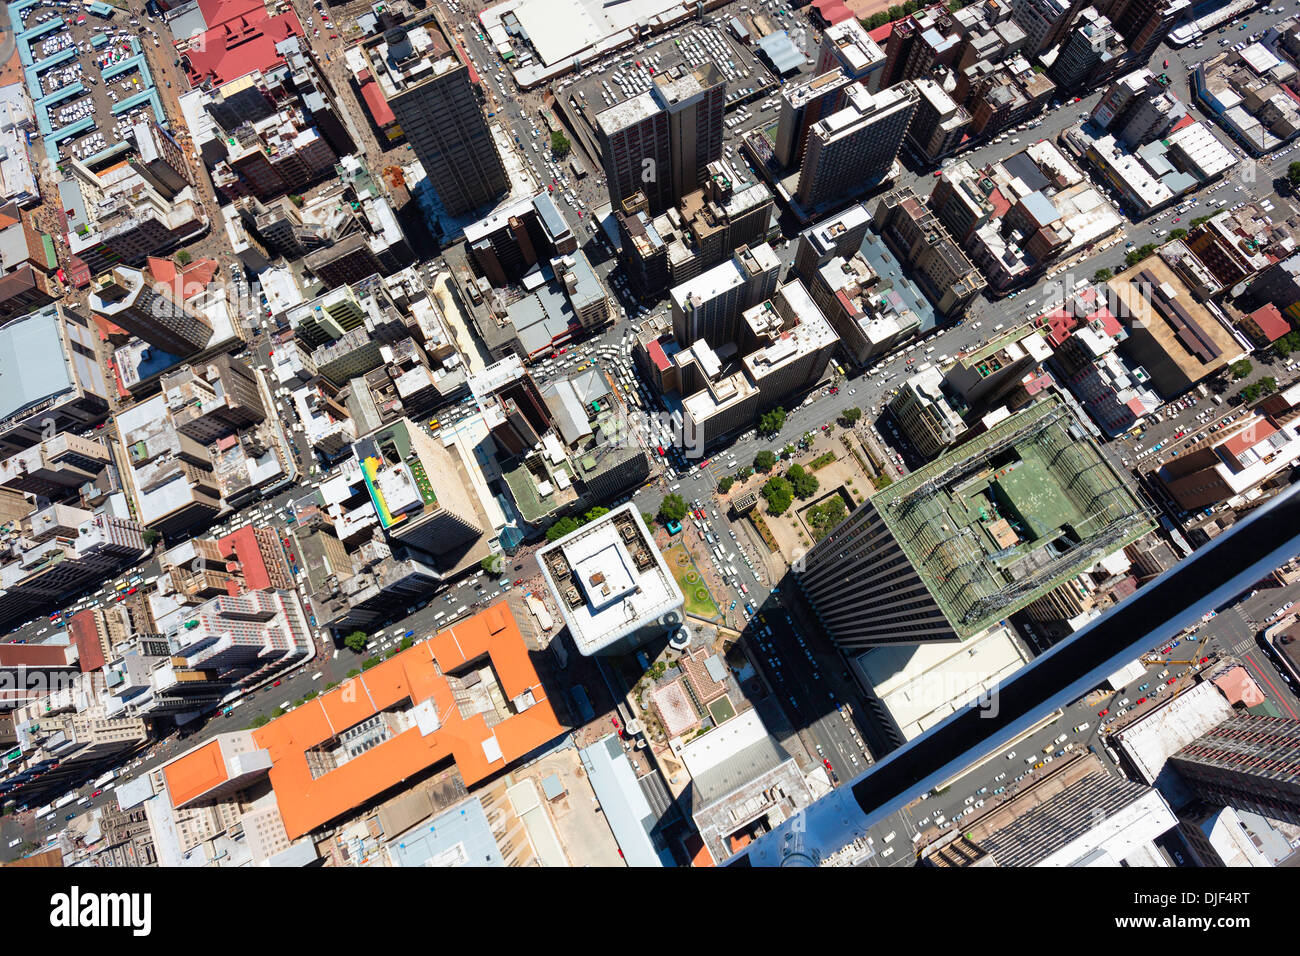 Vista aerea di Jeppe Street,Johannesburg CBD con il grattacielo torri di marmo Sanlan edificio centrale.Johannesburg, Sud Africa Foto Stock